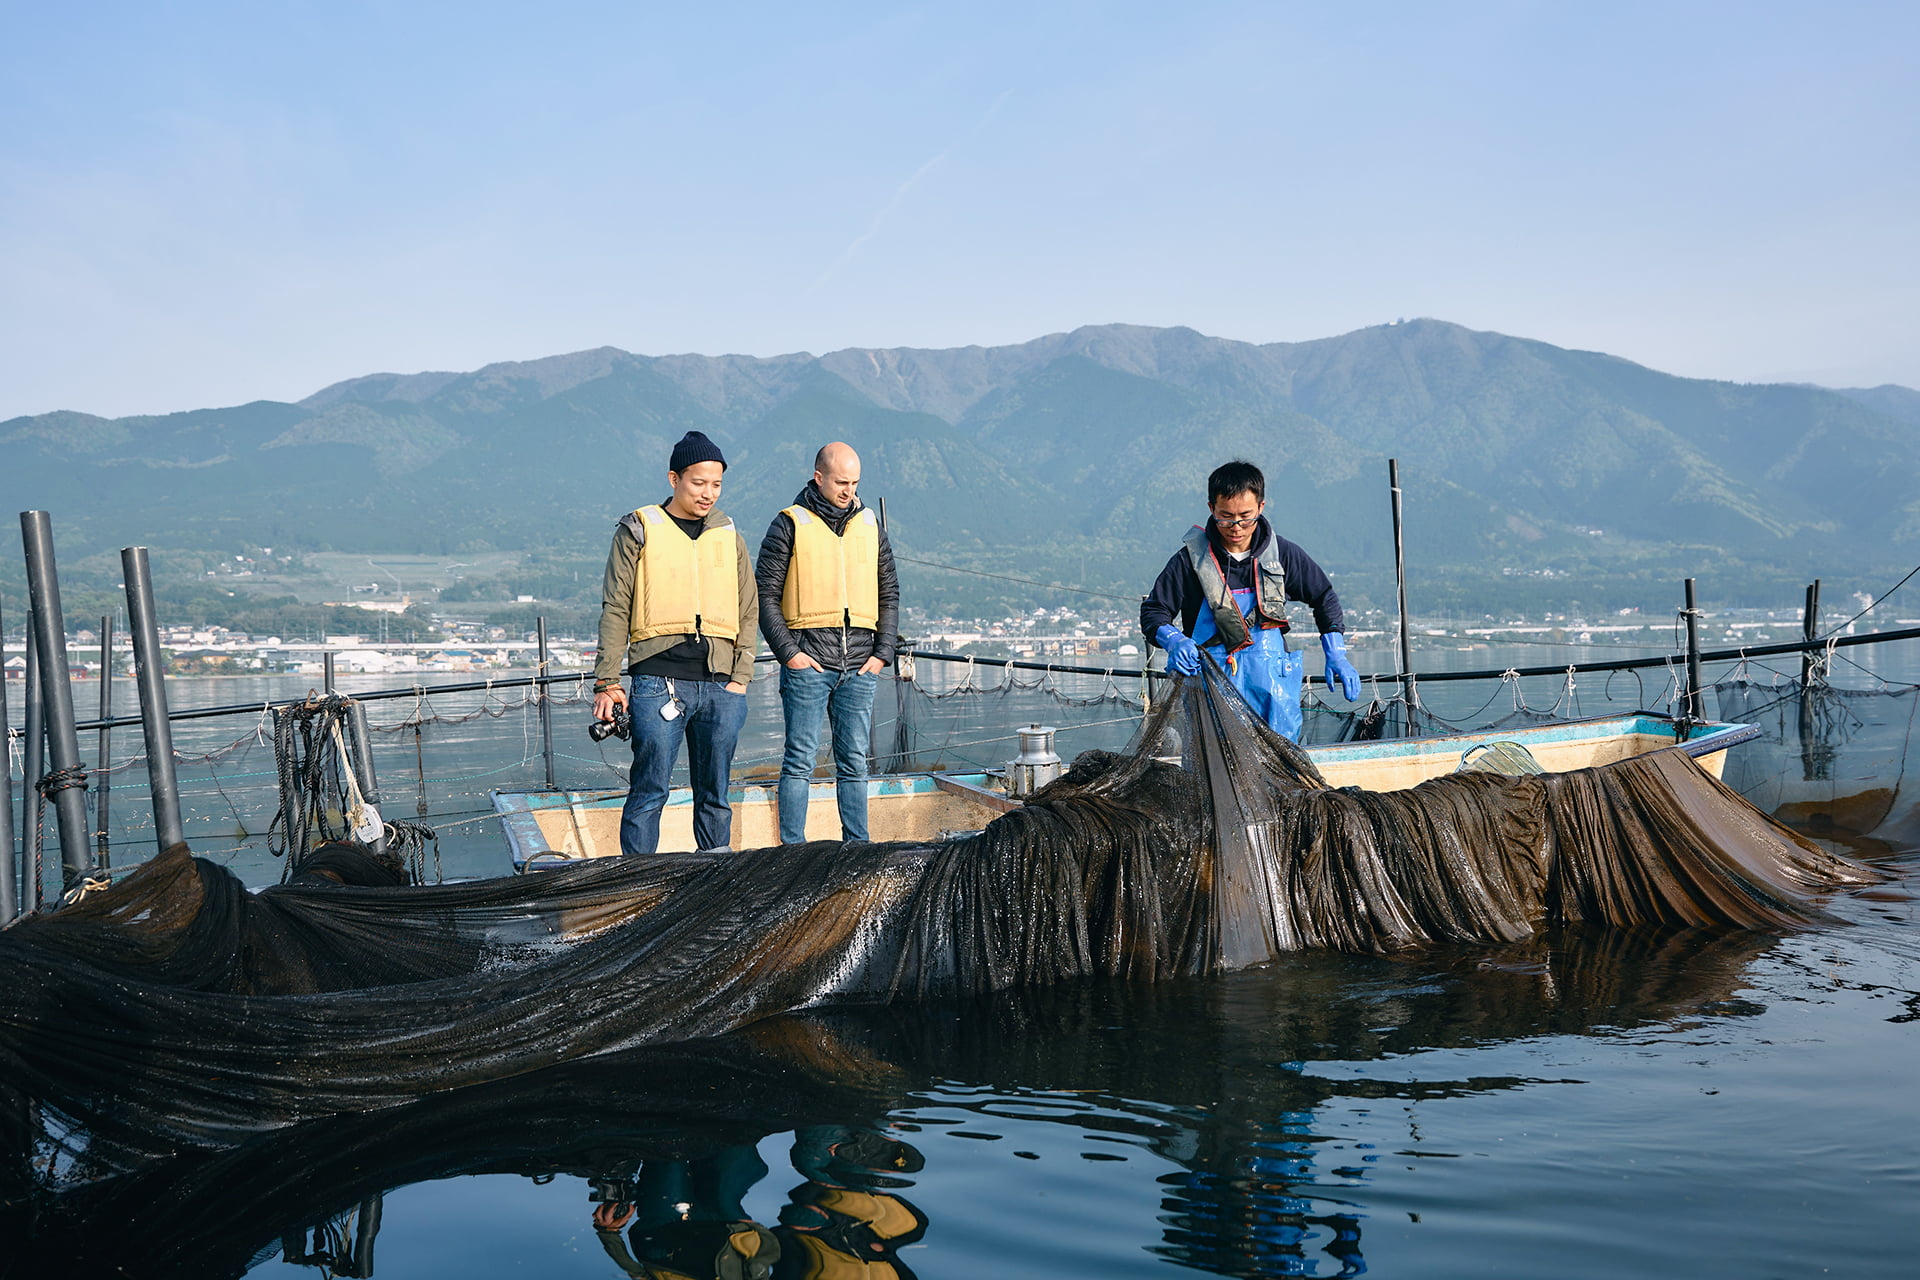 日本最大の湖・琵琶湖で行われる漁を見学